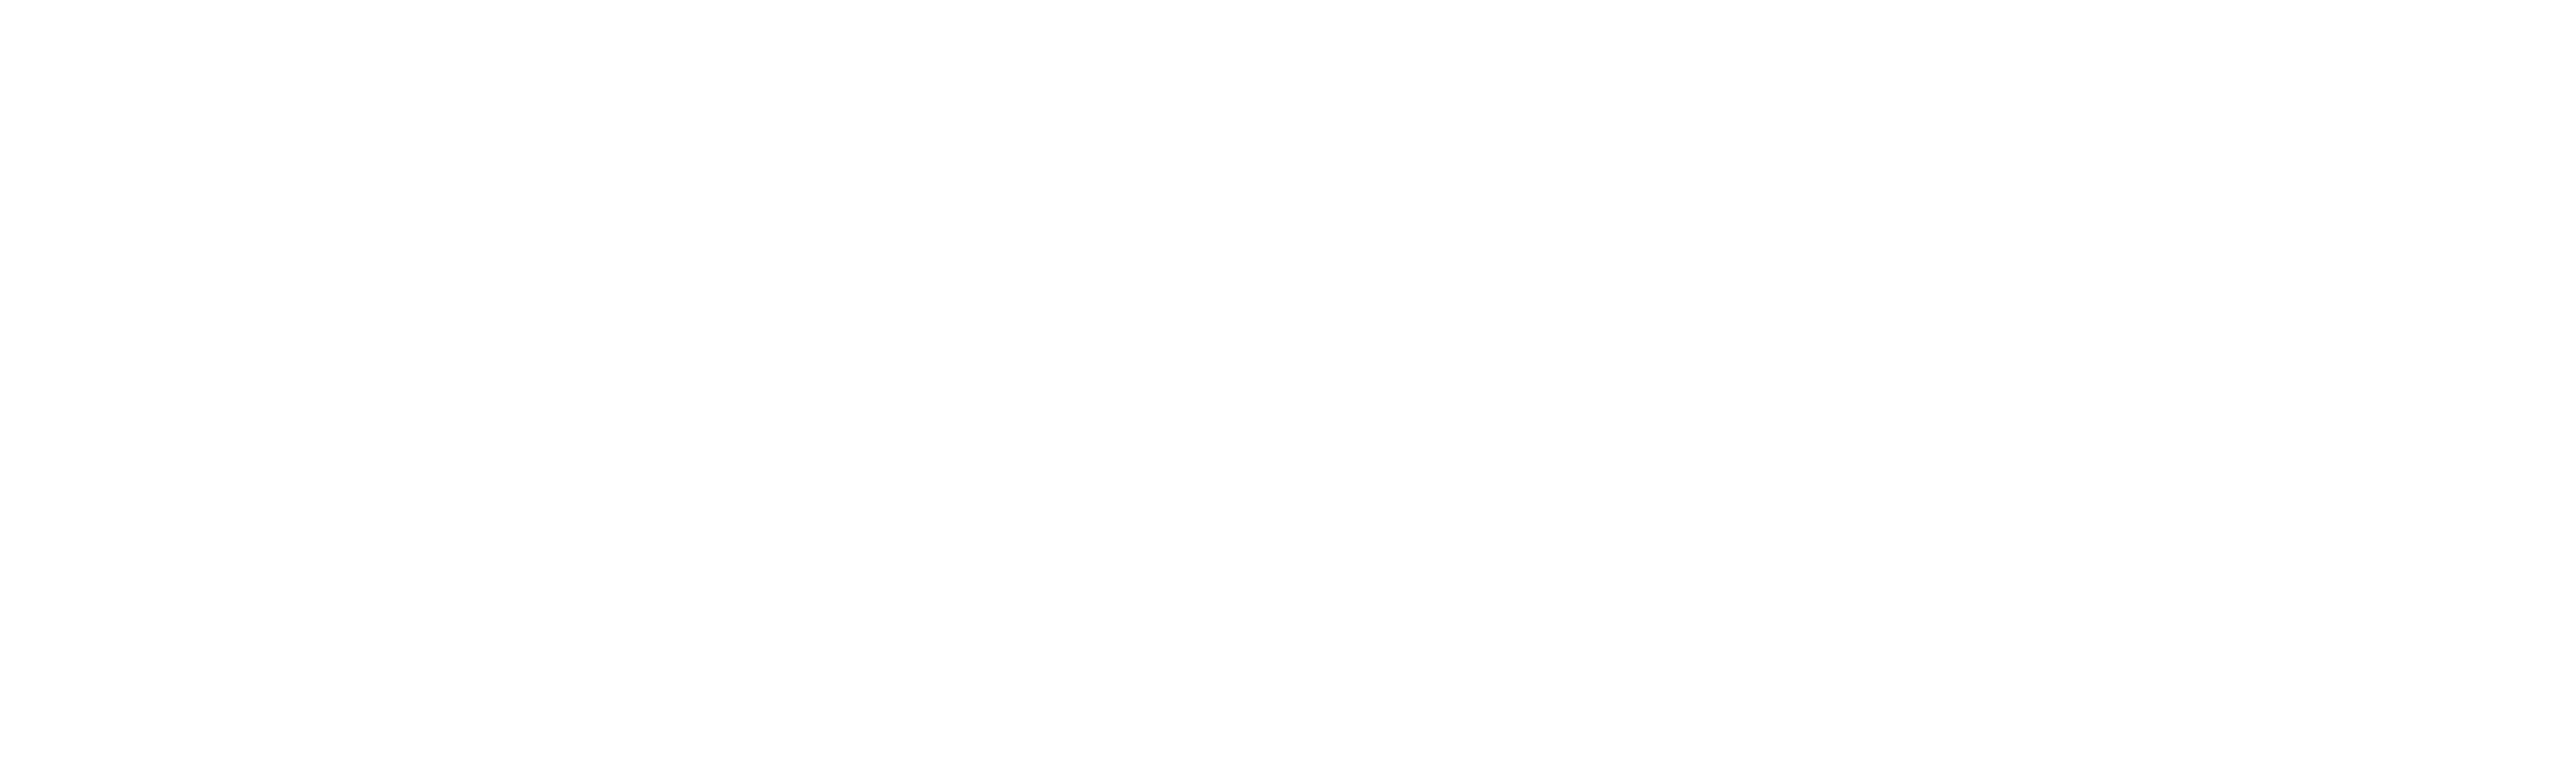 Kondominios Ecuador